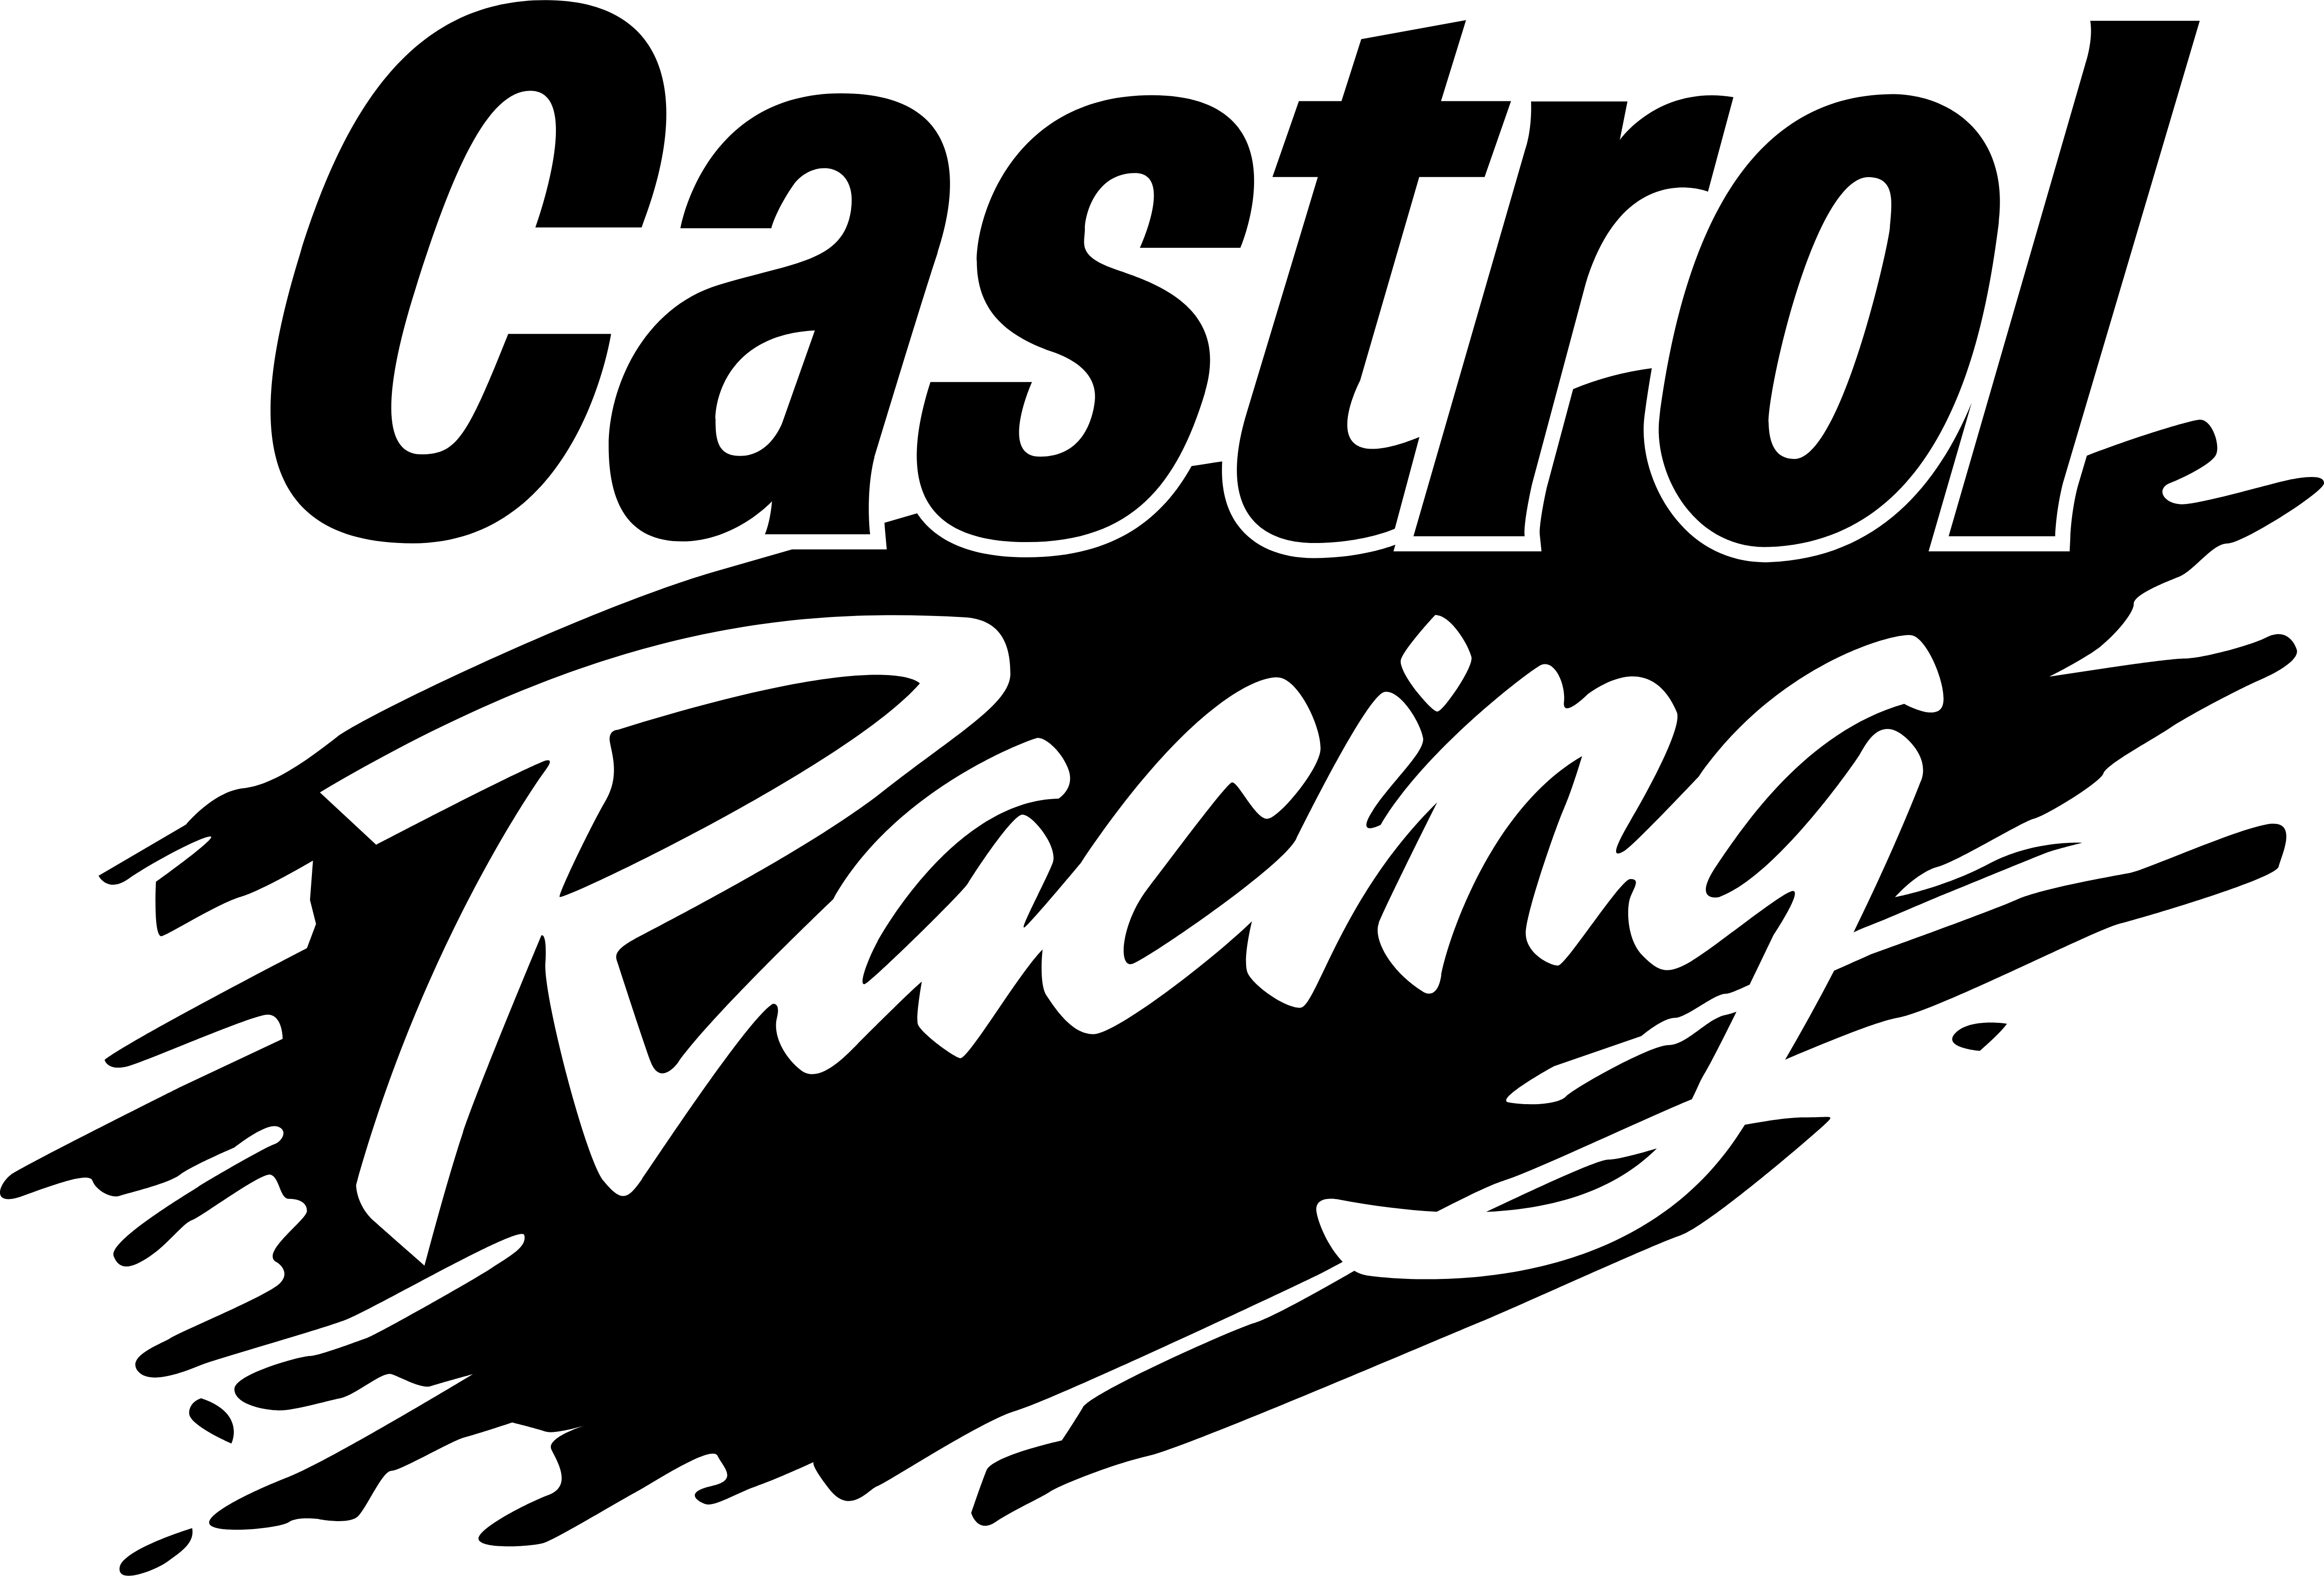 Спонсоры гонок. Castril Racing logo. Спонсорские наклейки на авто. Автомобильные Спонсоры наклейки. Наклейки на авто спортивные надписи.